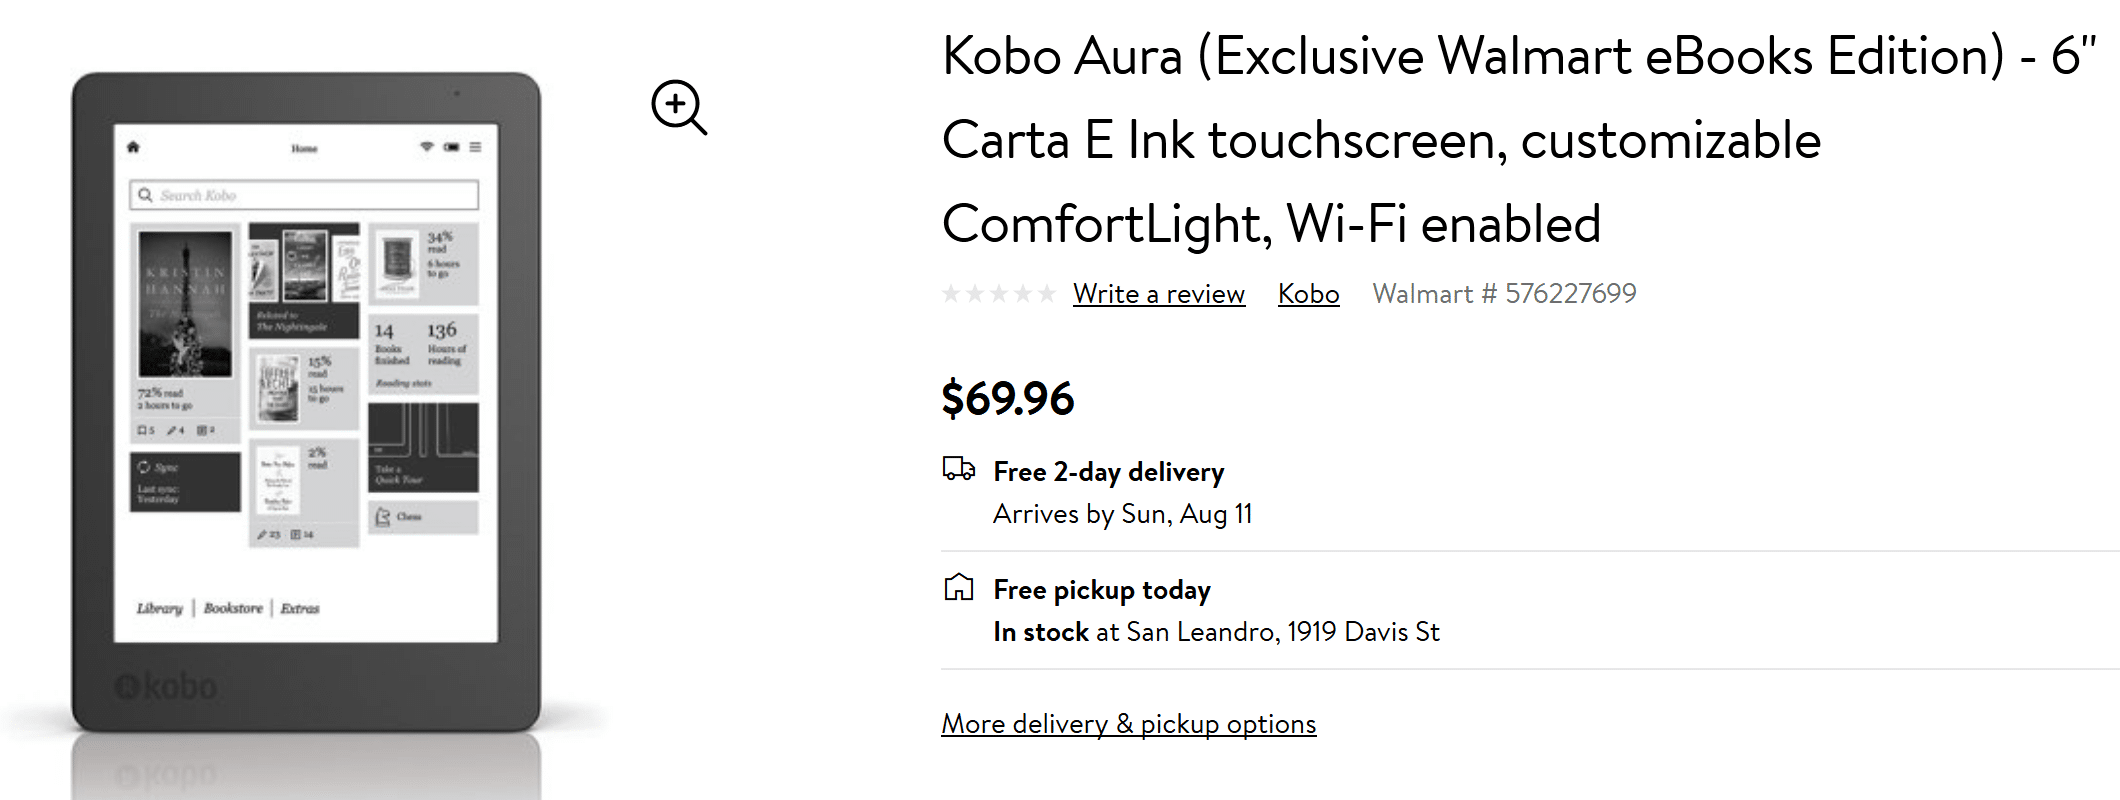 Walmart запускает Kobo Aura - эксклюзивное издание электронных книг Walmart